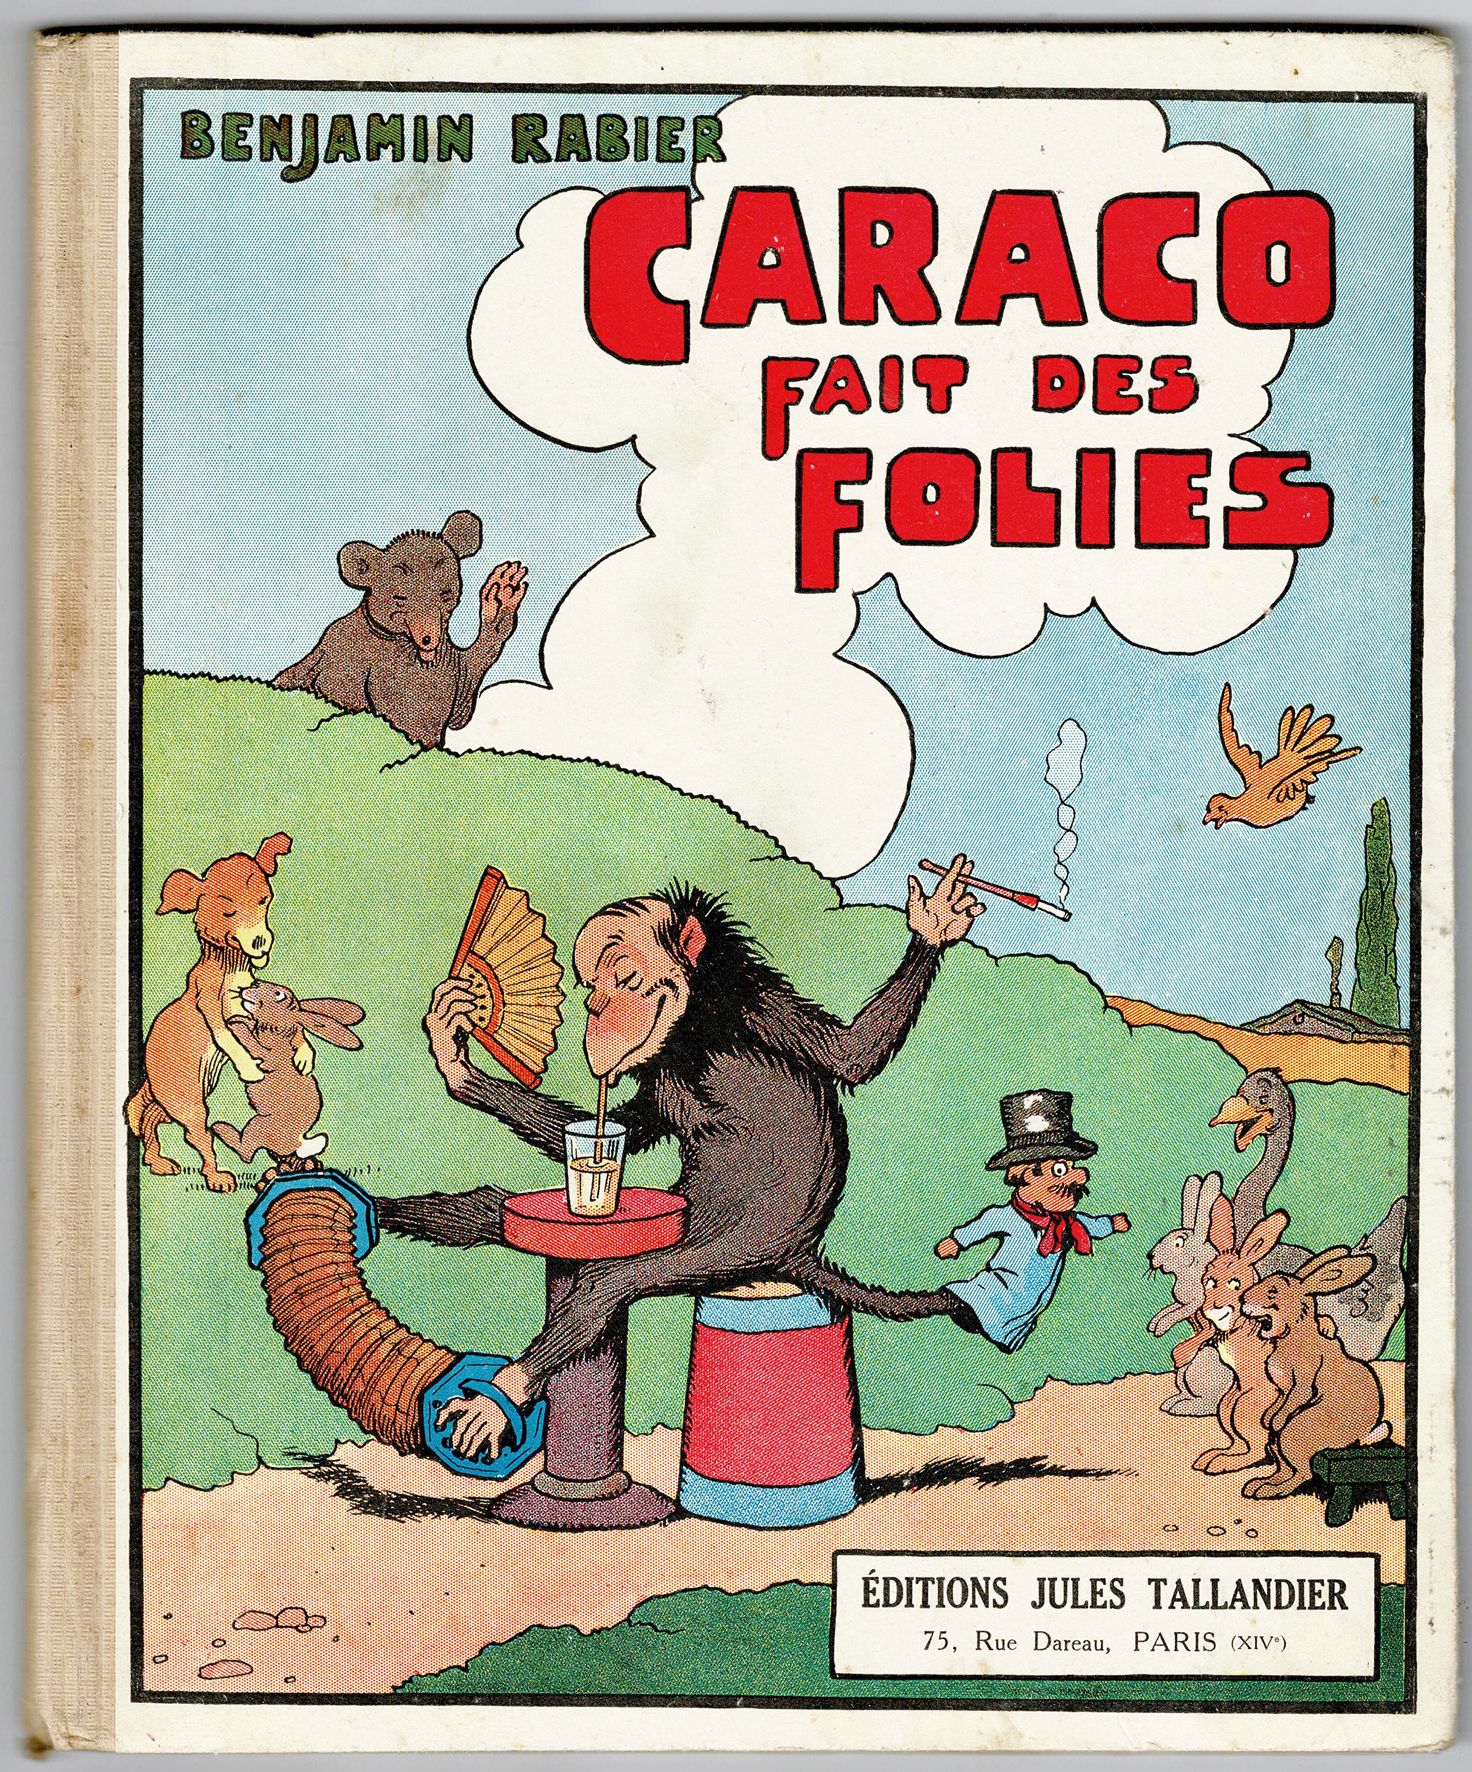 Benjamin RABIER 
Caraco fait des folies》的1933年原版。状况非常好。